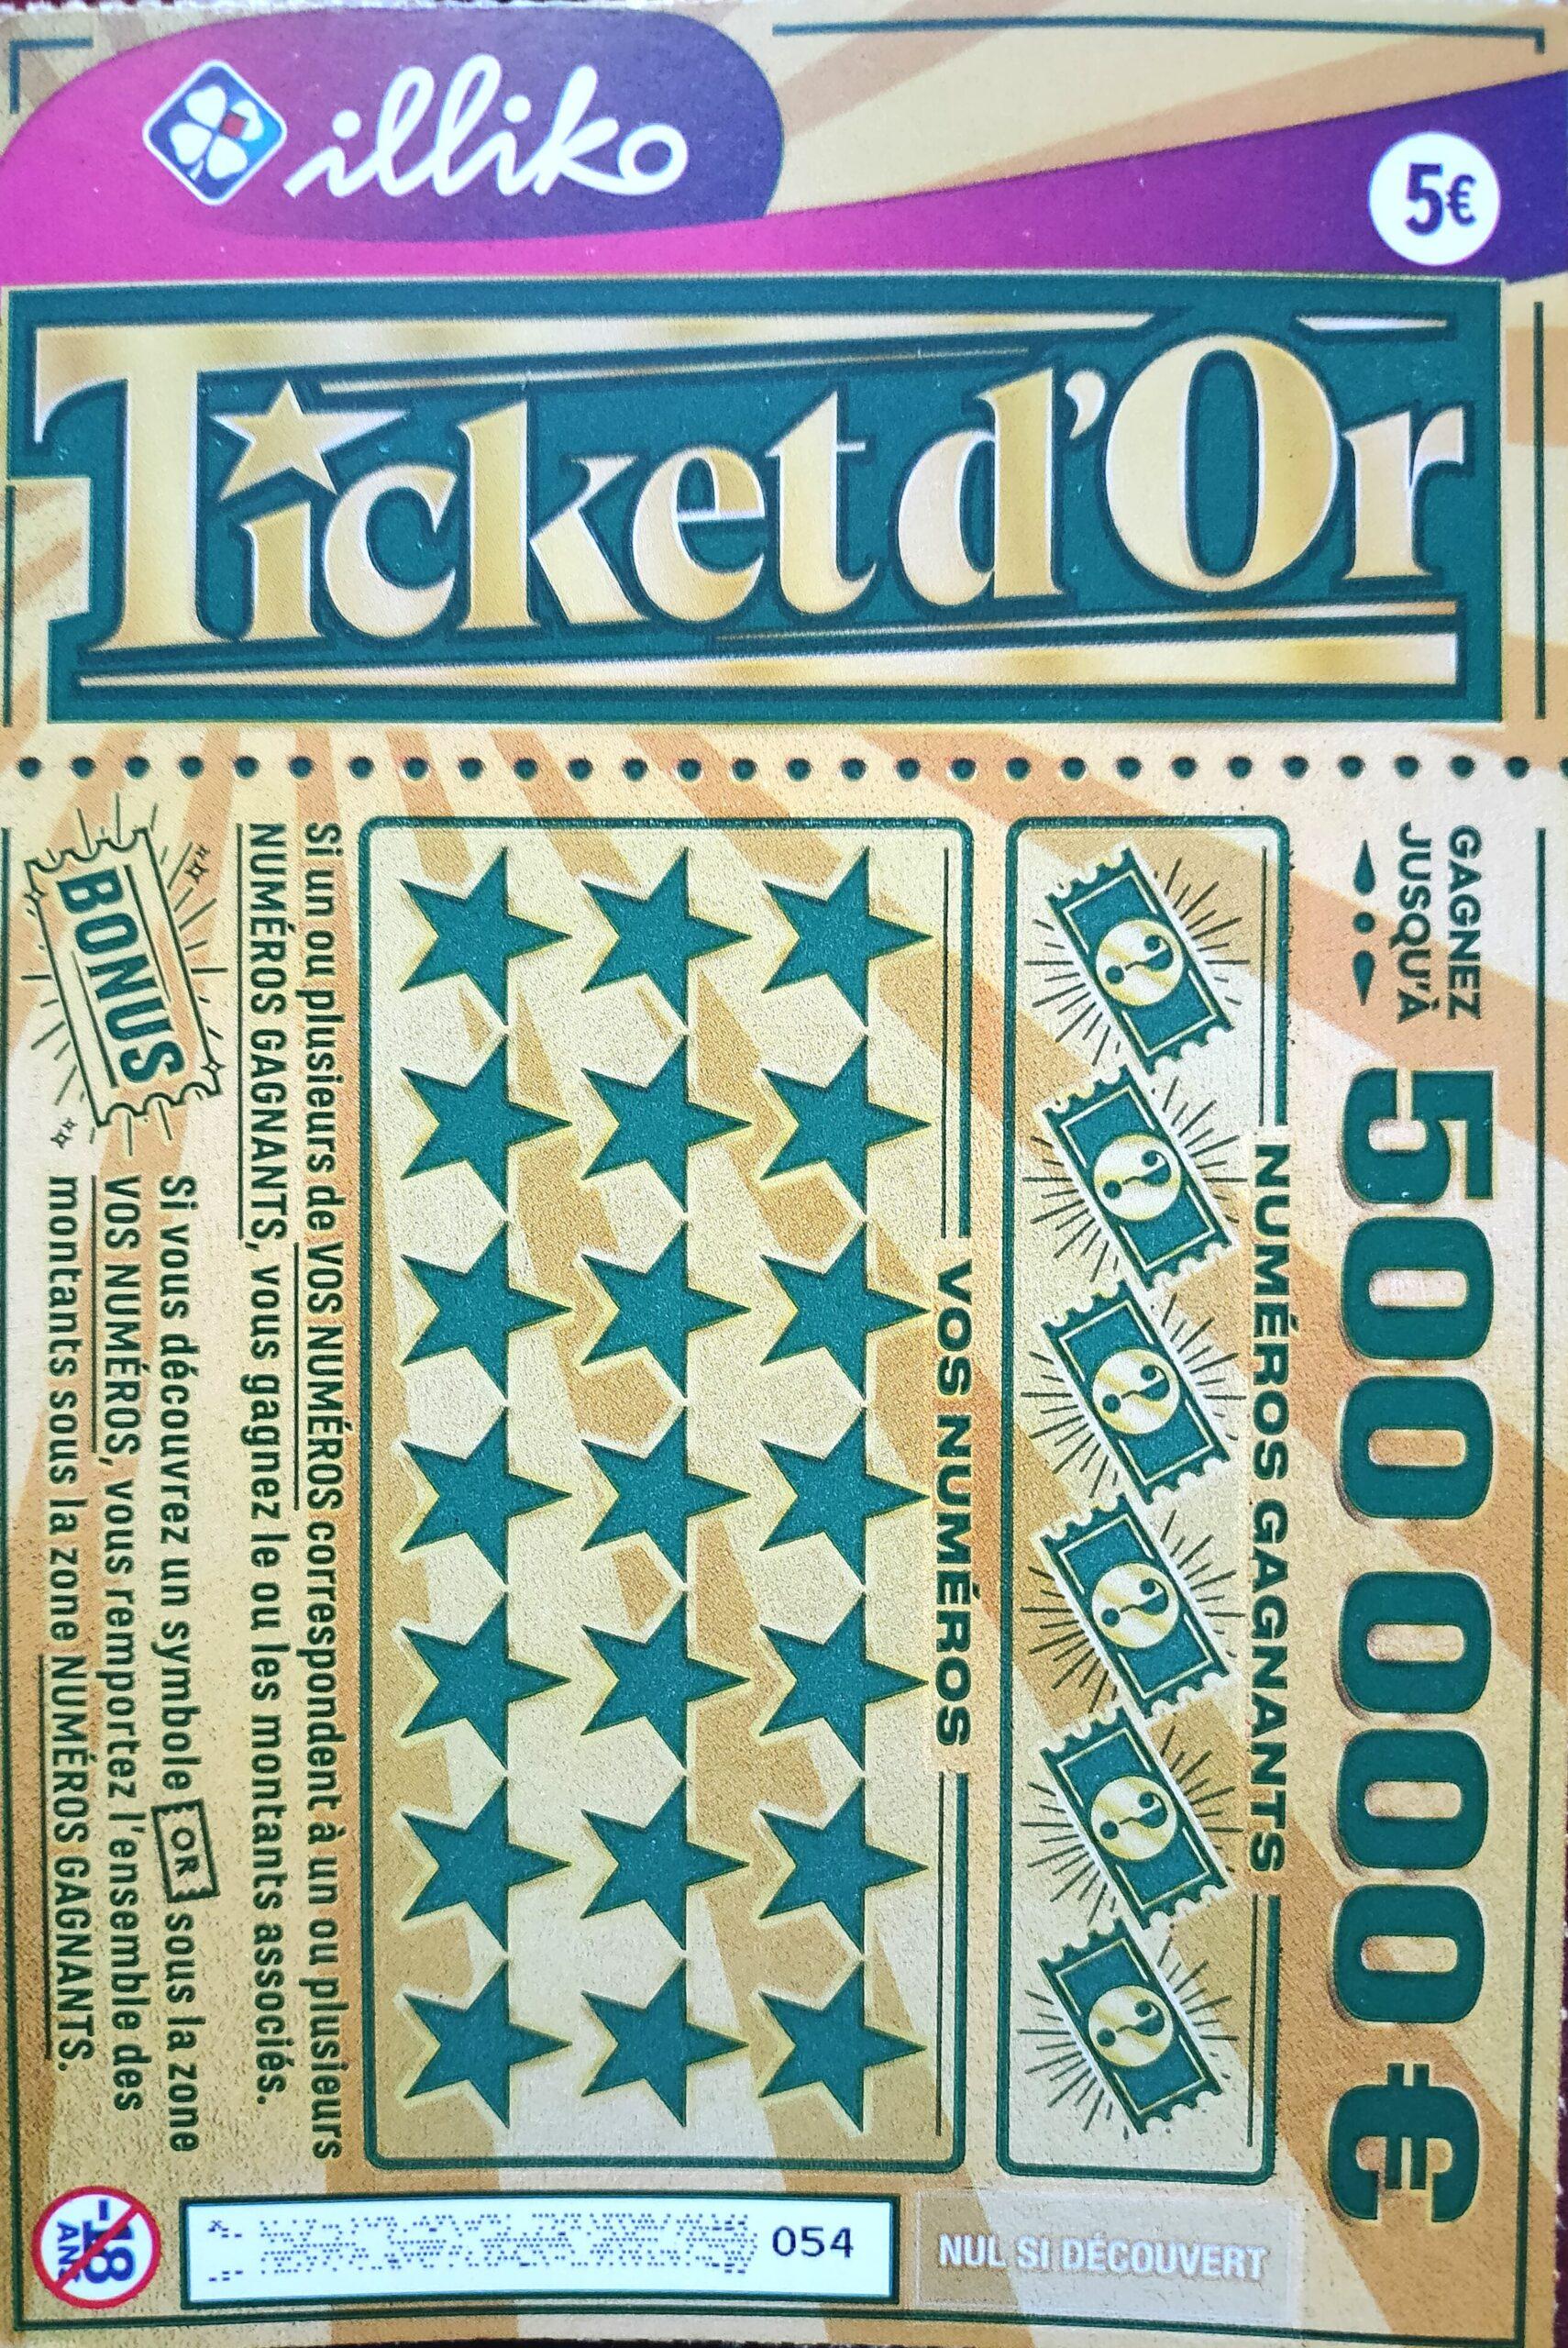 Le ticket FDJ Le 3 en 1 avec 30 000 € ✓ comparatif et avis